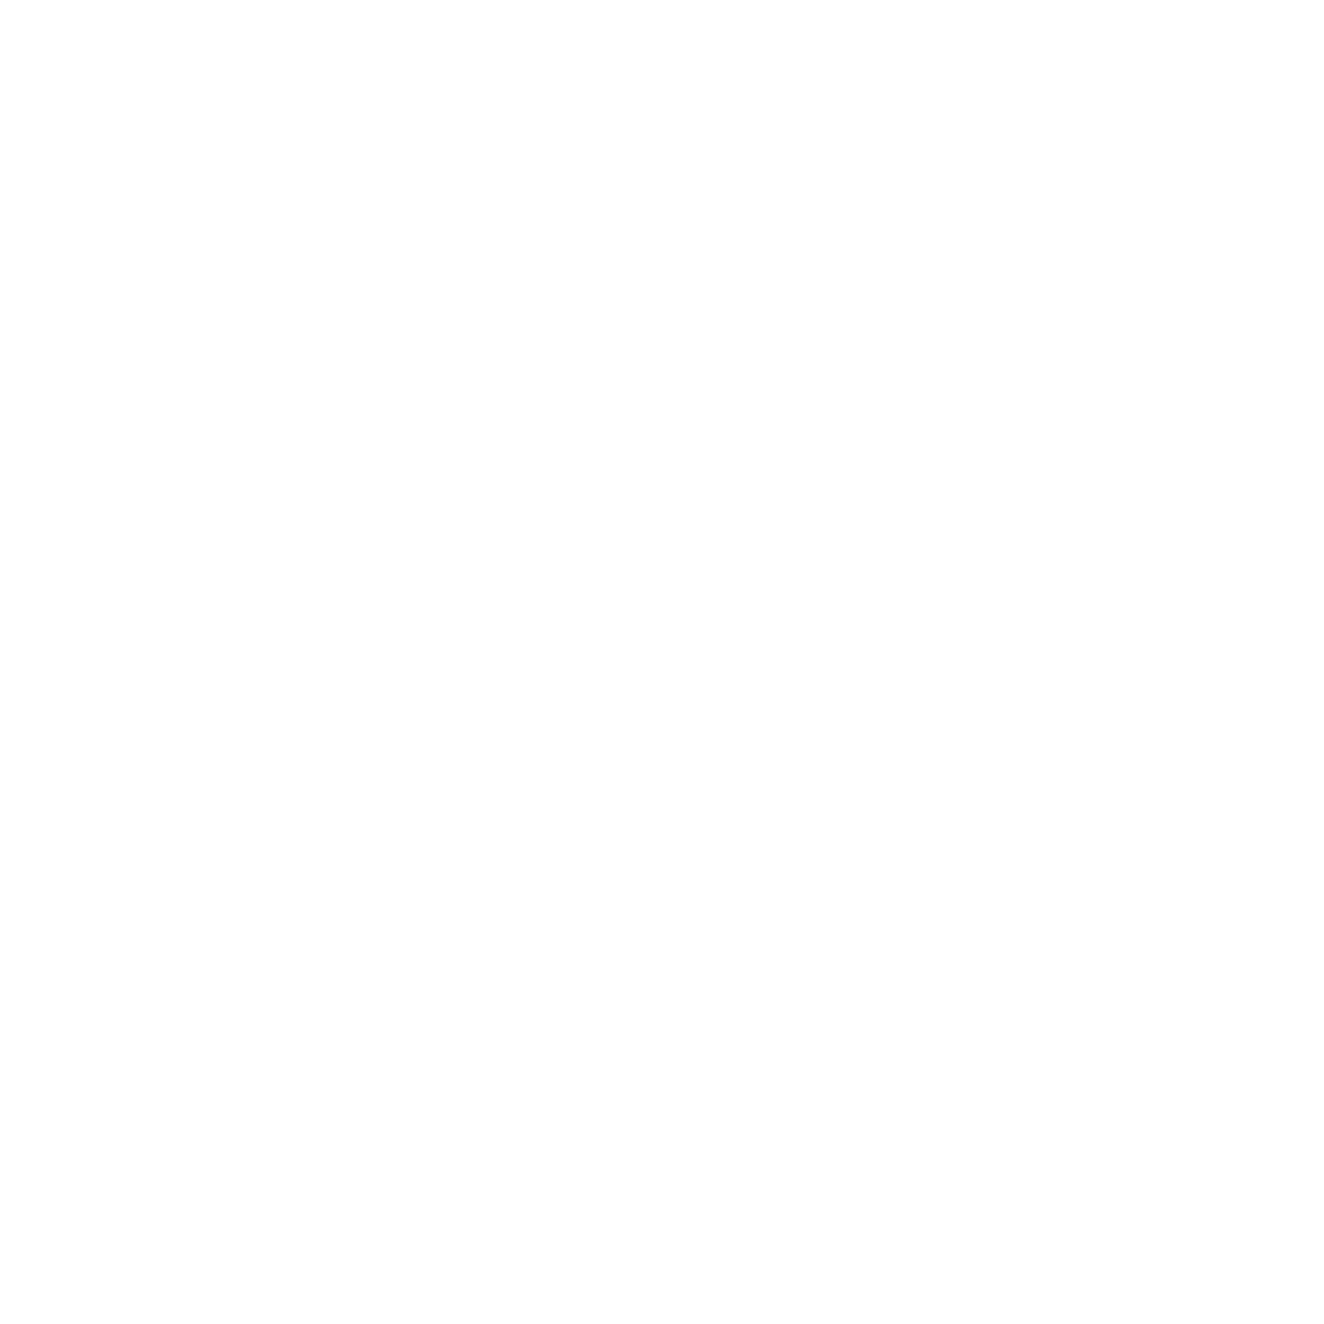 Bordo School